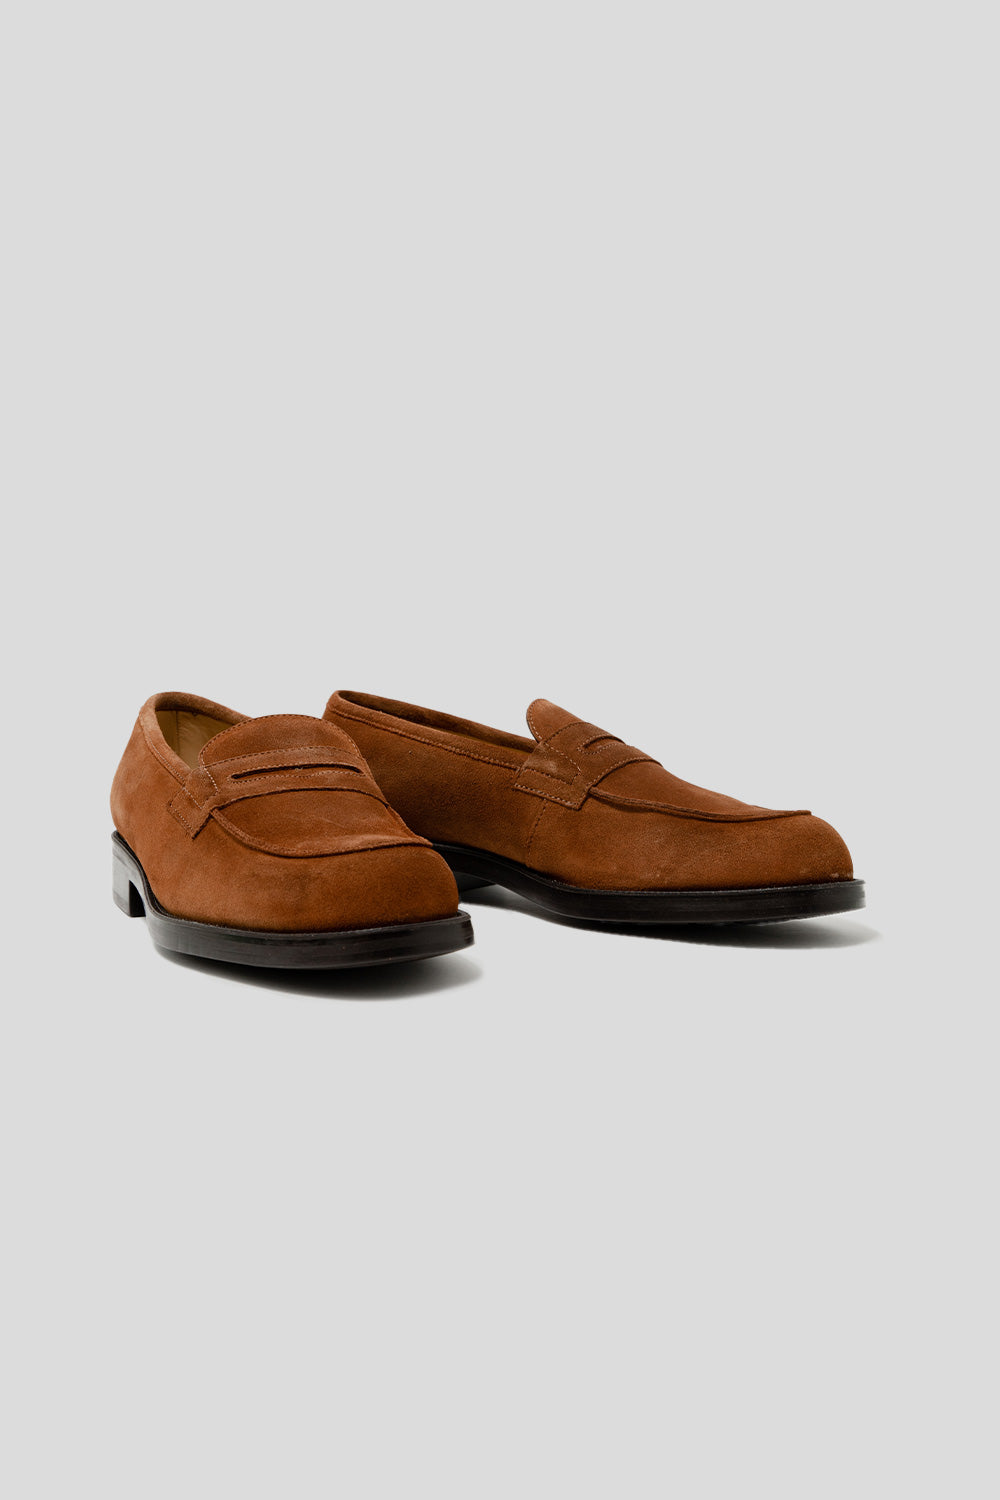 Kleman Dalior 2 V shoe in Cognac suede